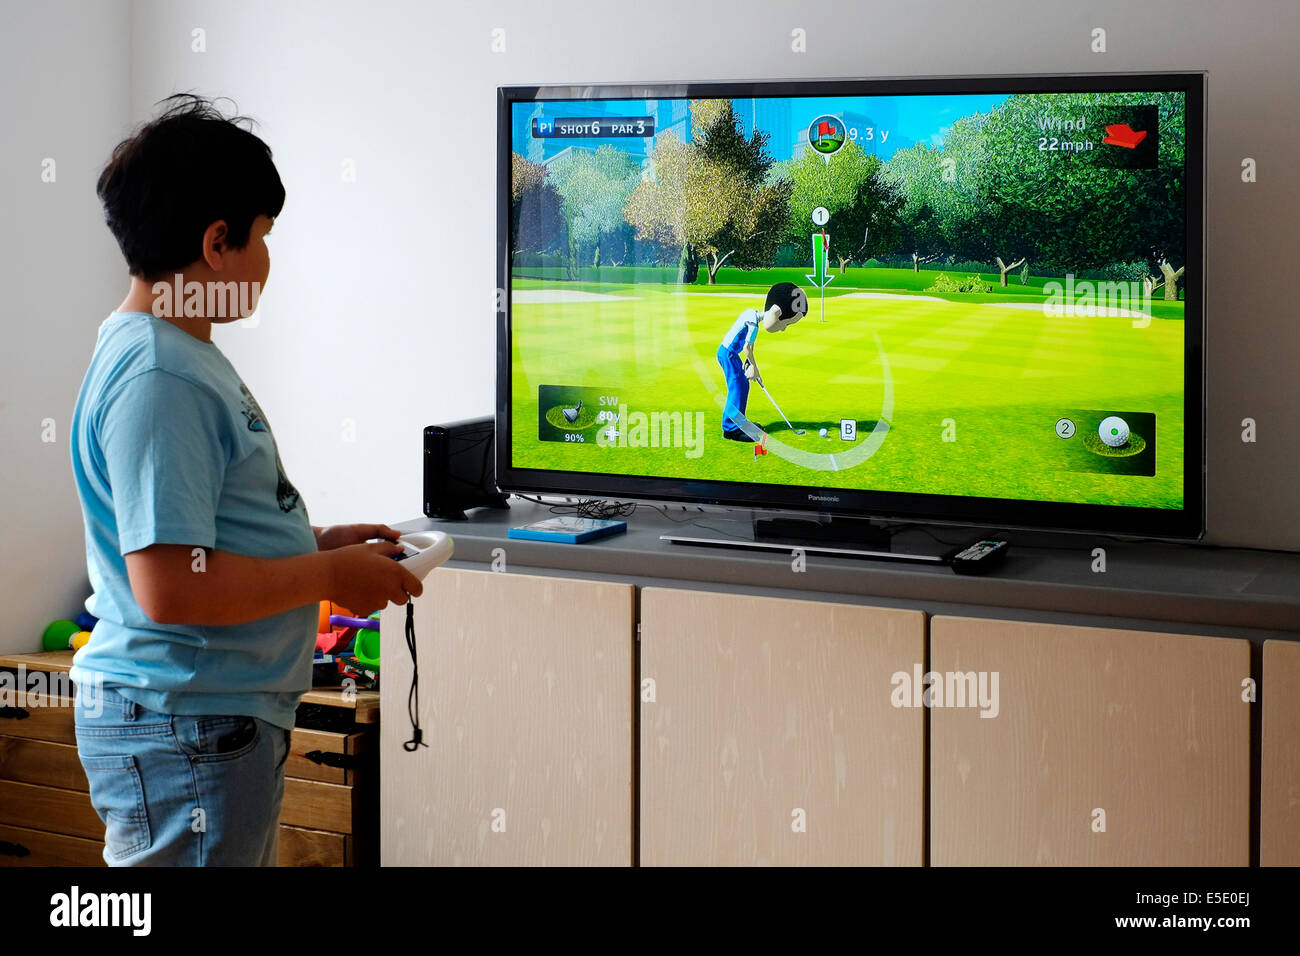 kleiner Junge mit Nintendo Wii zu Hause vor großen Bildschirm spielen  Stockfotografie - Alamy